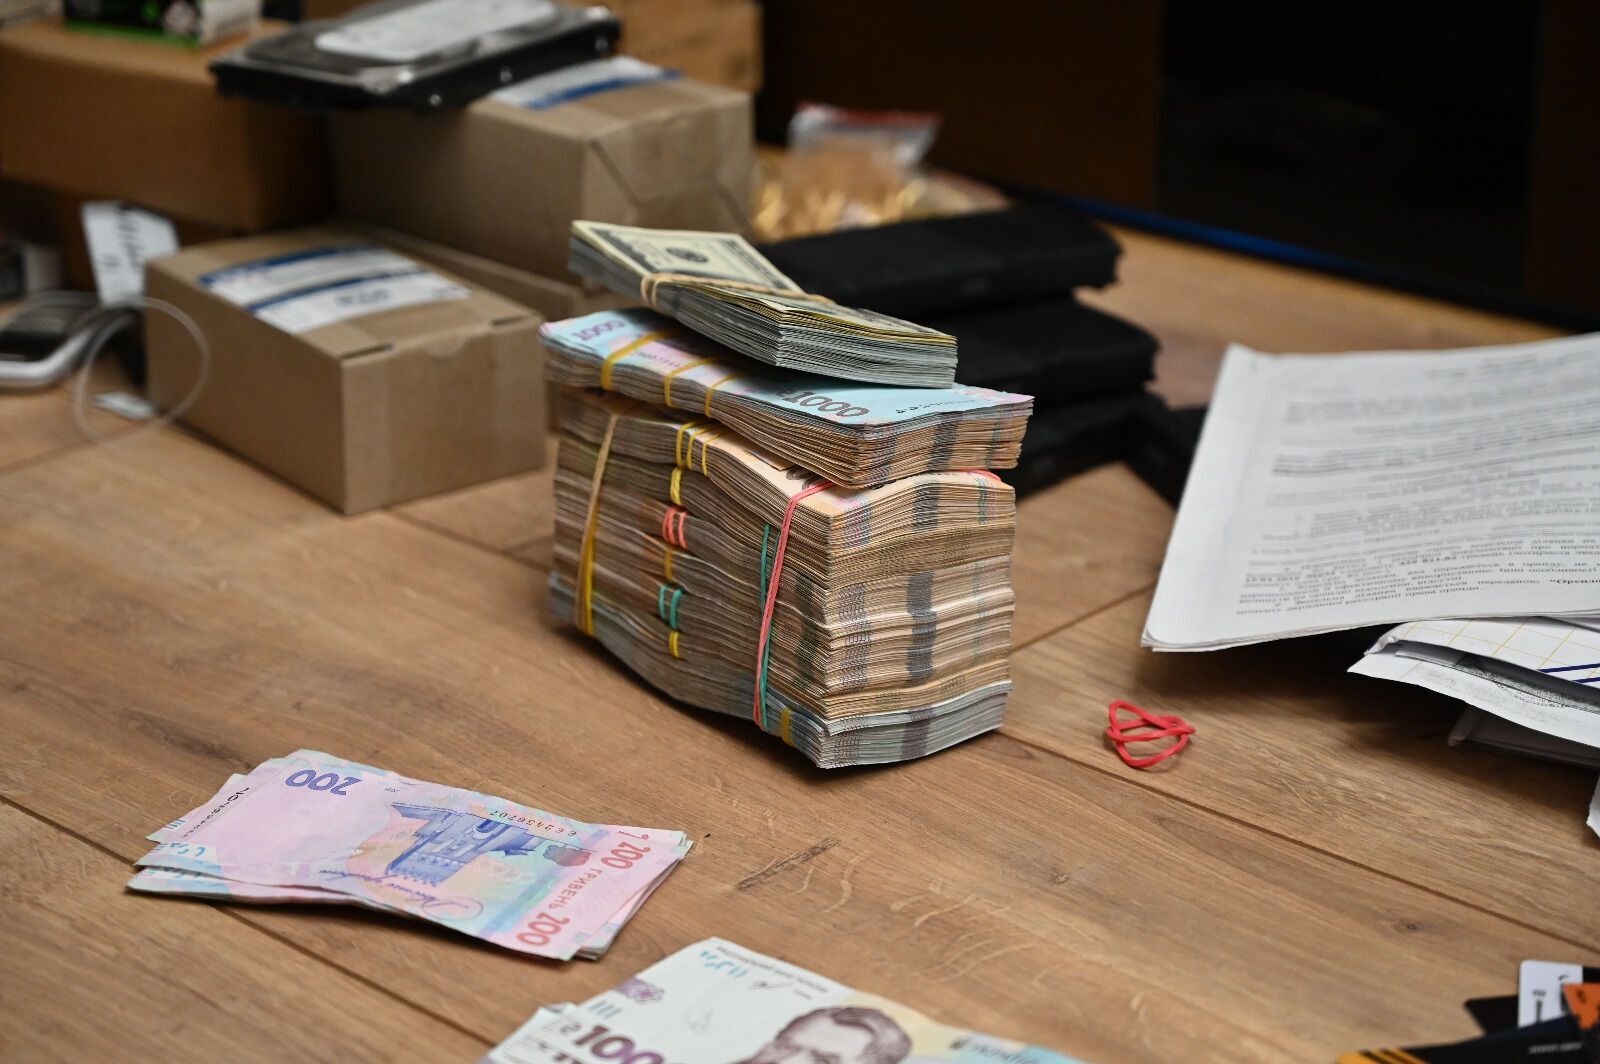 "Обеспечивали" наркотиками почти всю Украину: правоохранители разоблачили наркокартель с месячной прибылью в $1 миллион. Фото и все детали